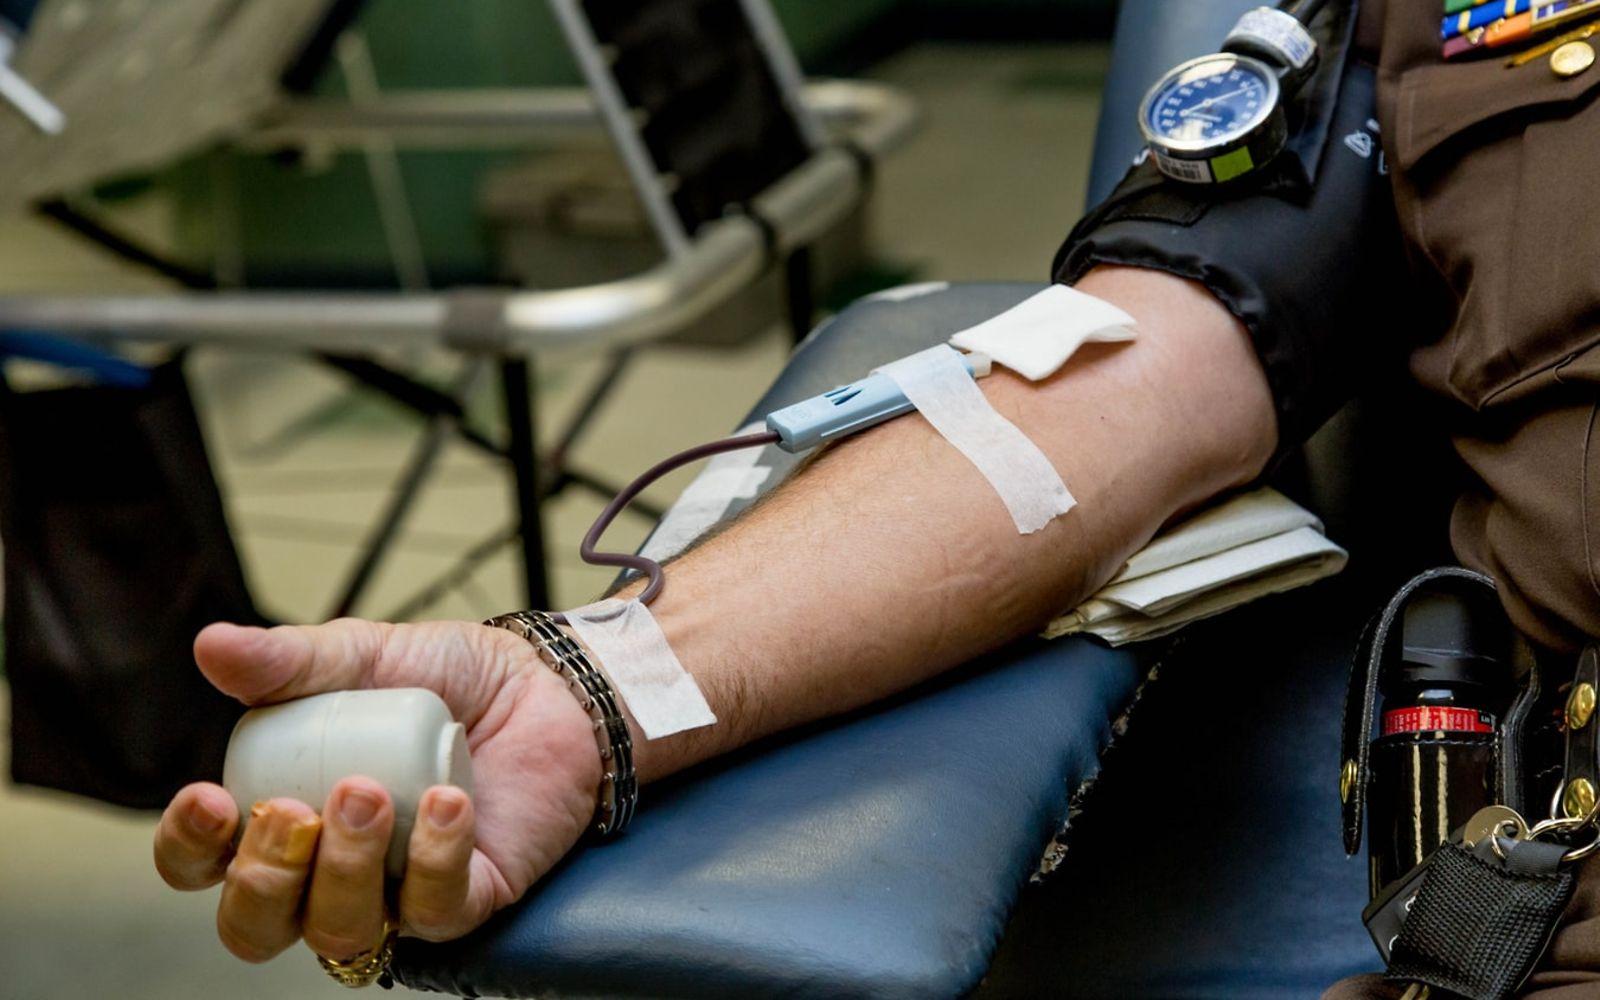 Blutspende für Transfusionen: Arm, dem gerade Blut entnommen wird